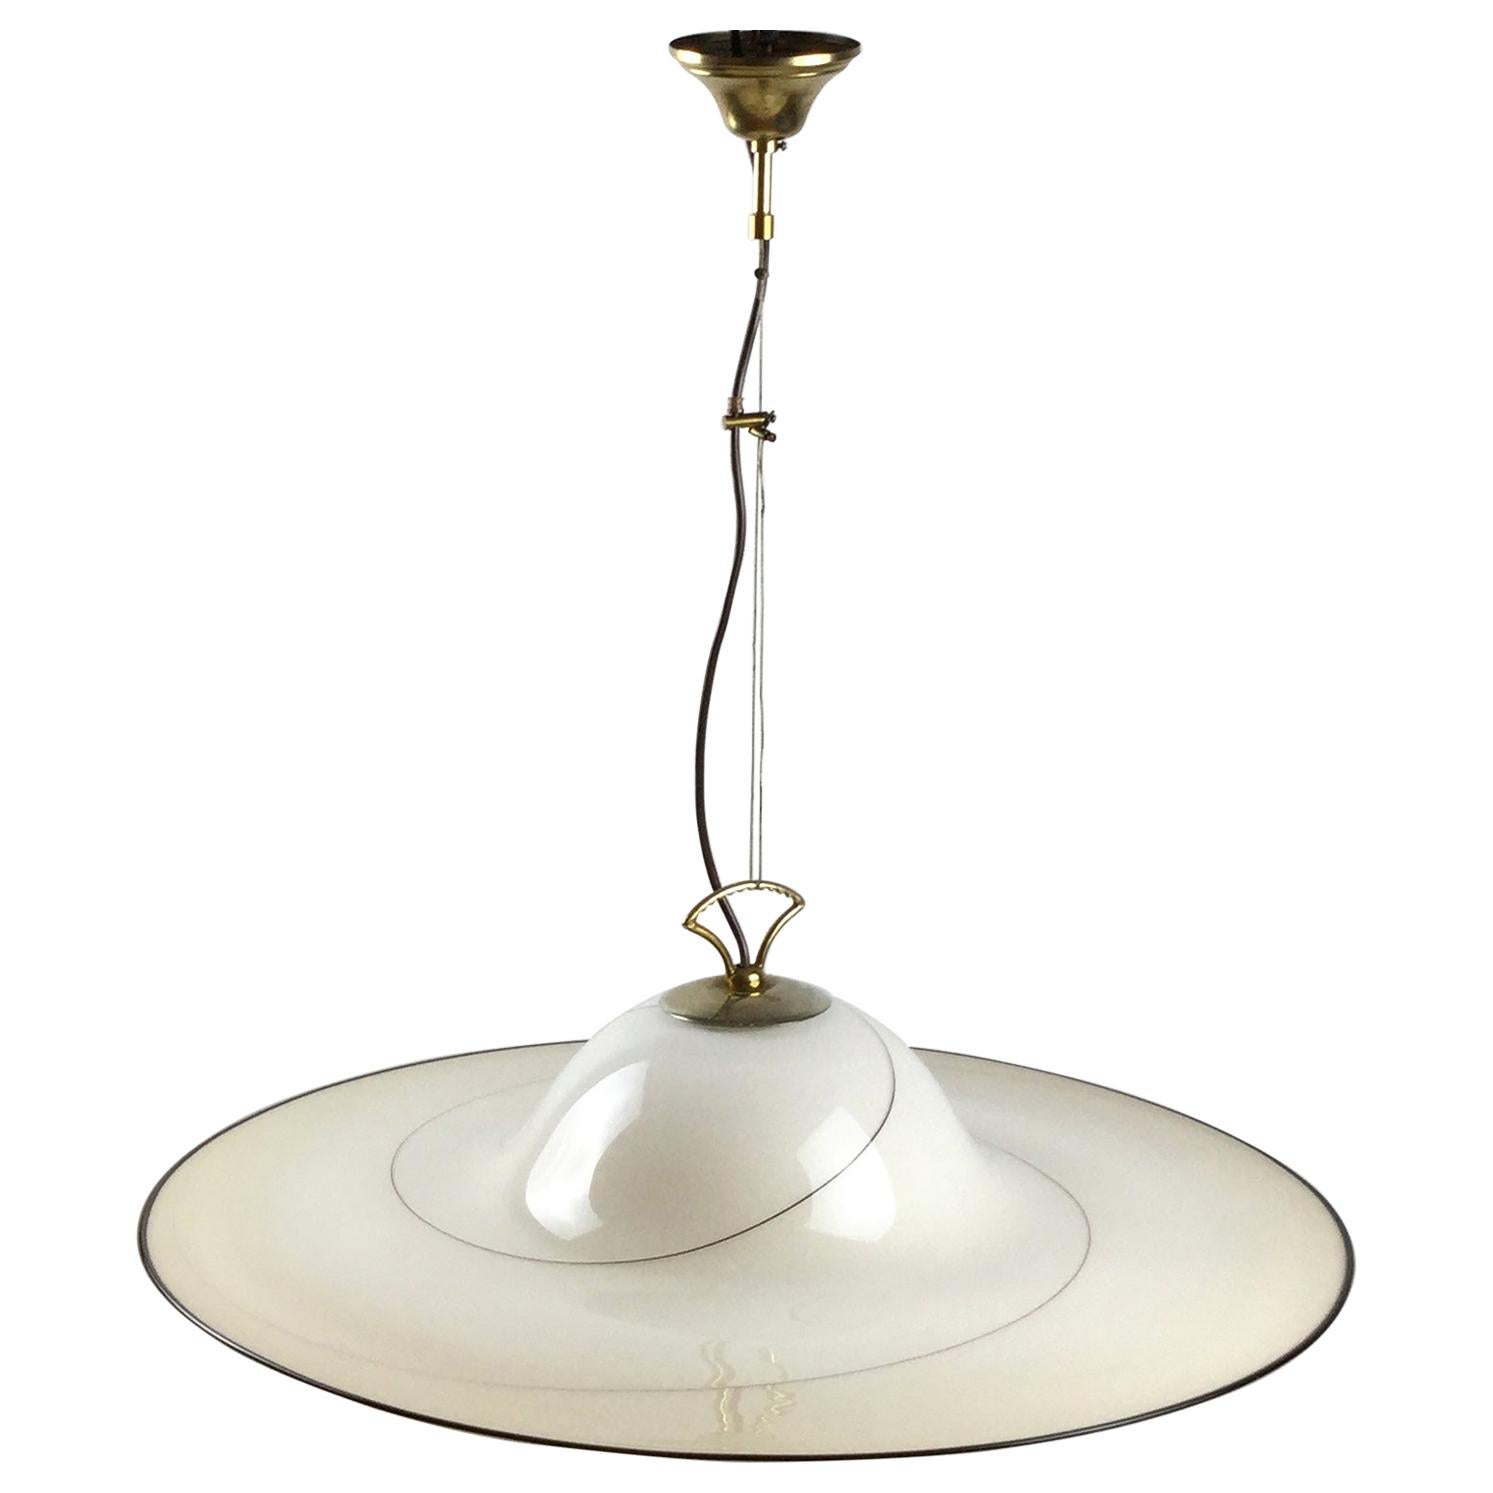 1980s Murano Italian Glass Pendant Lamp Attributed to Seguso Vetri d'Arte